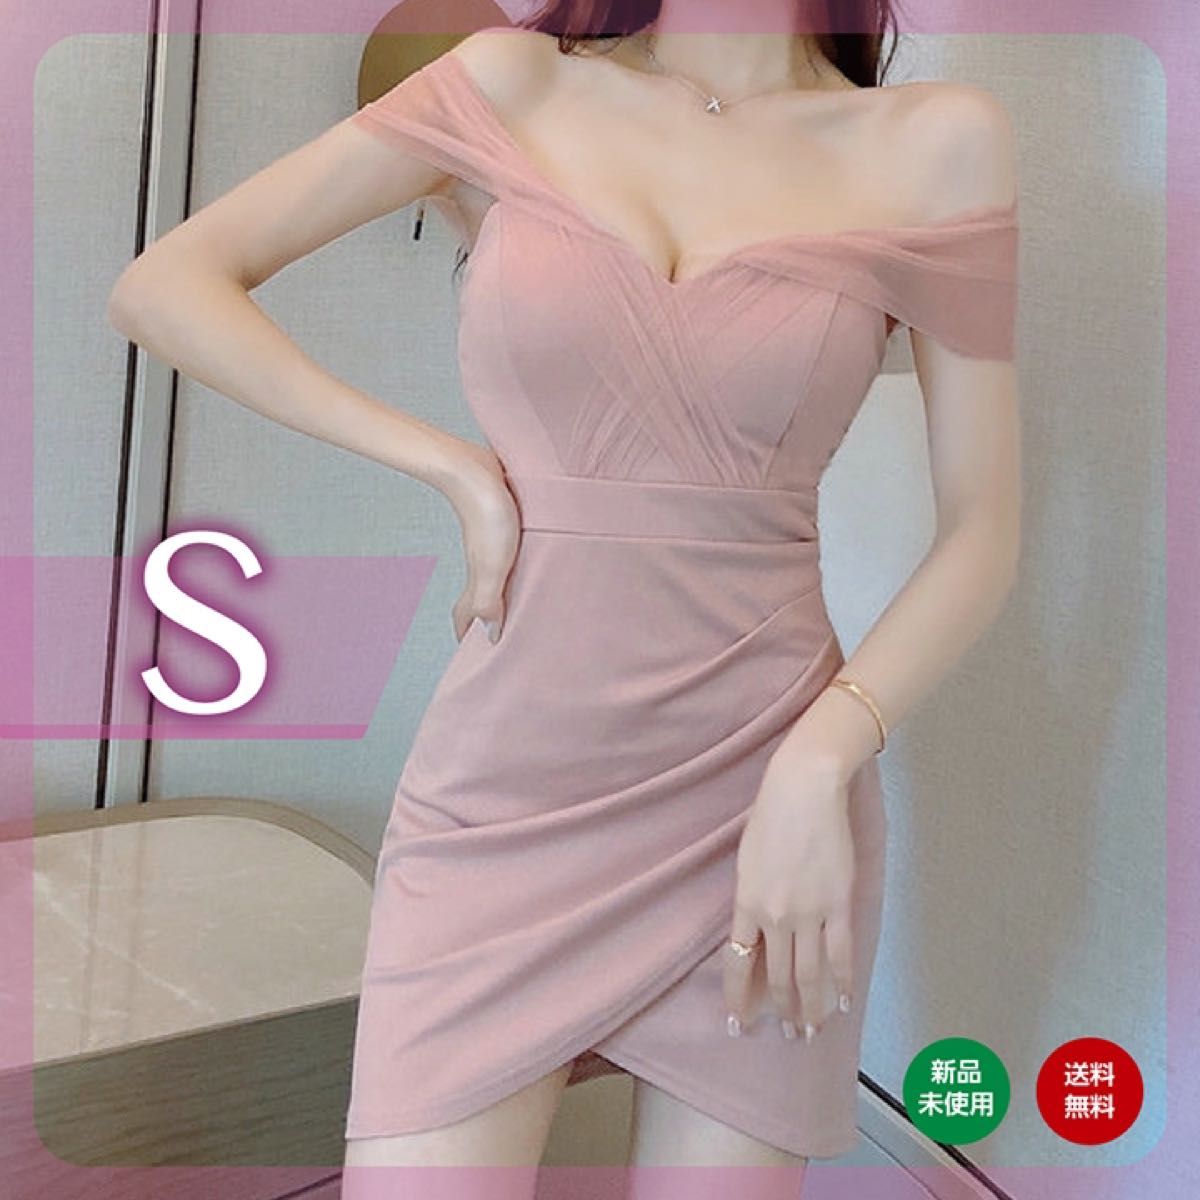 S ワンピース キャバドレス パーティー タイトスカート かわいい セクシー ピンク ミニワンピース  ドレス